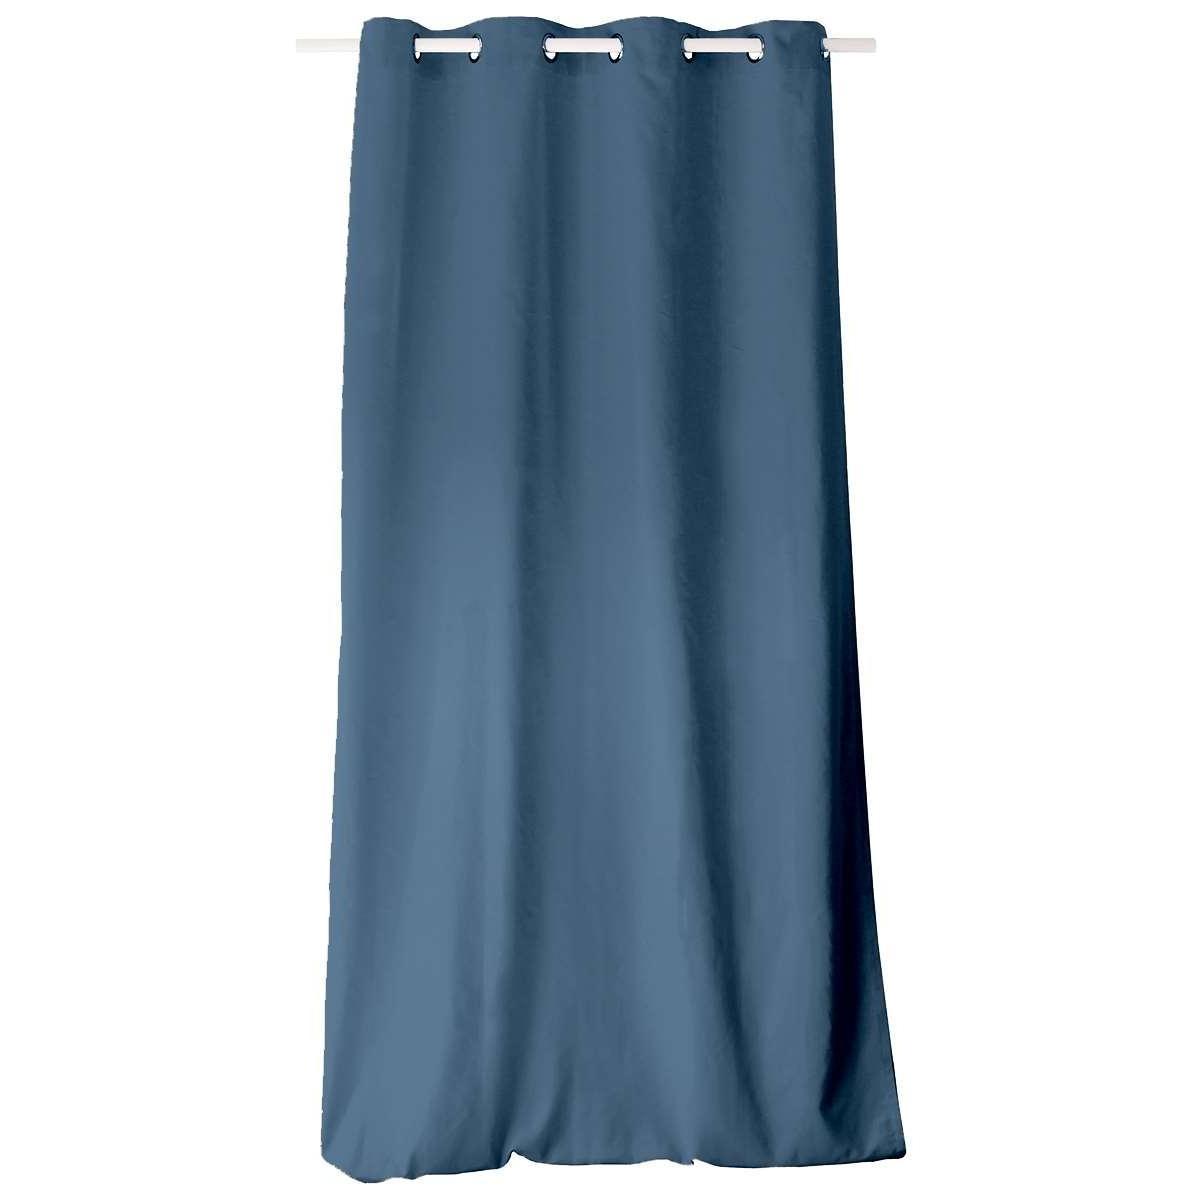 Panneau à œillets - 135 x 240 cm - Bleu jean